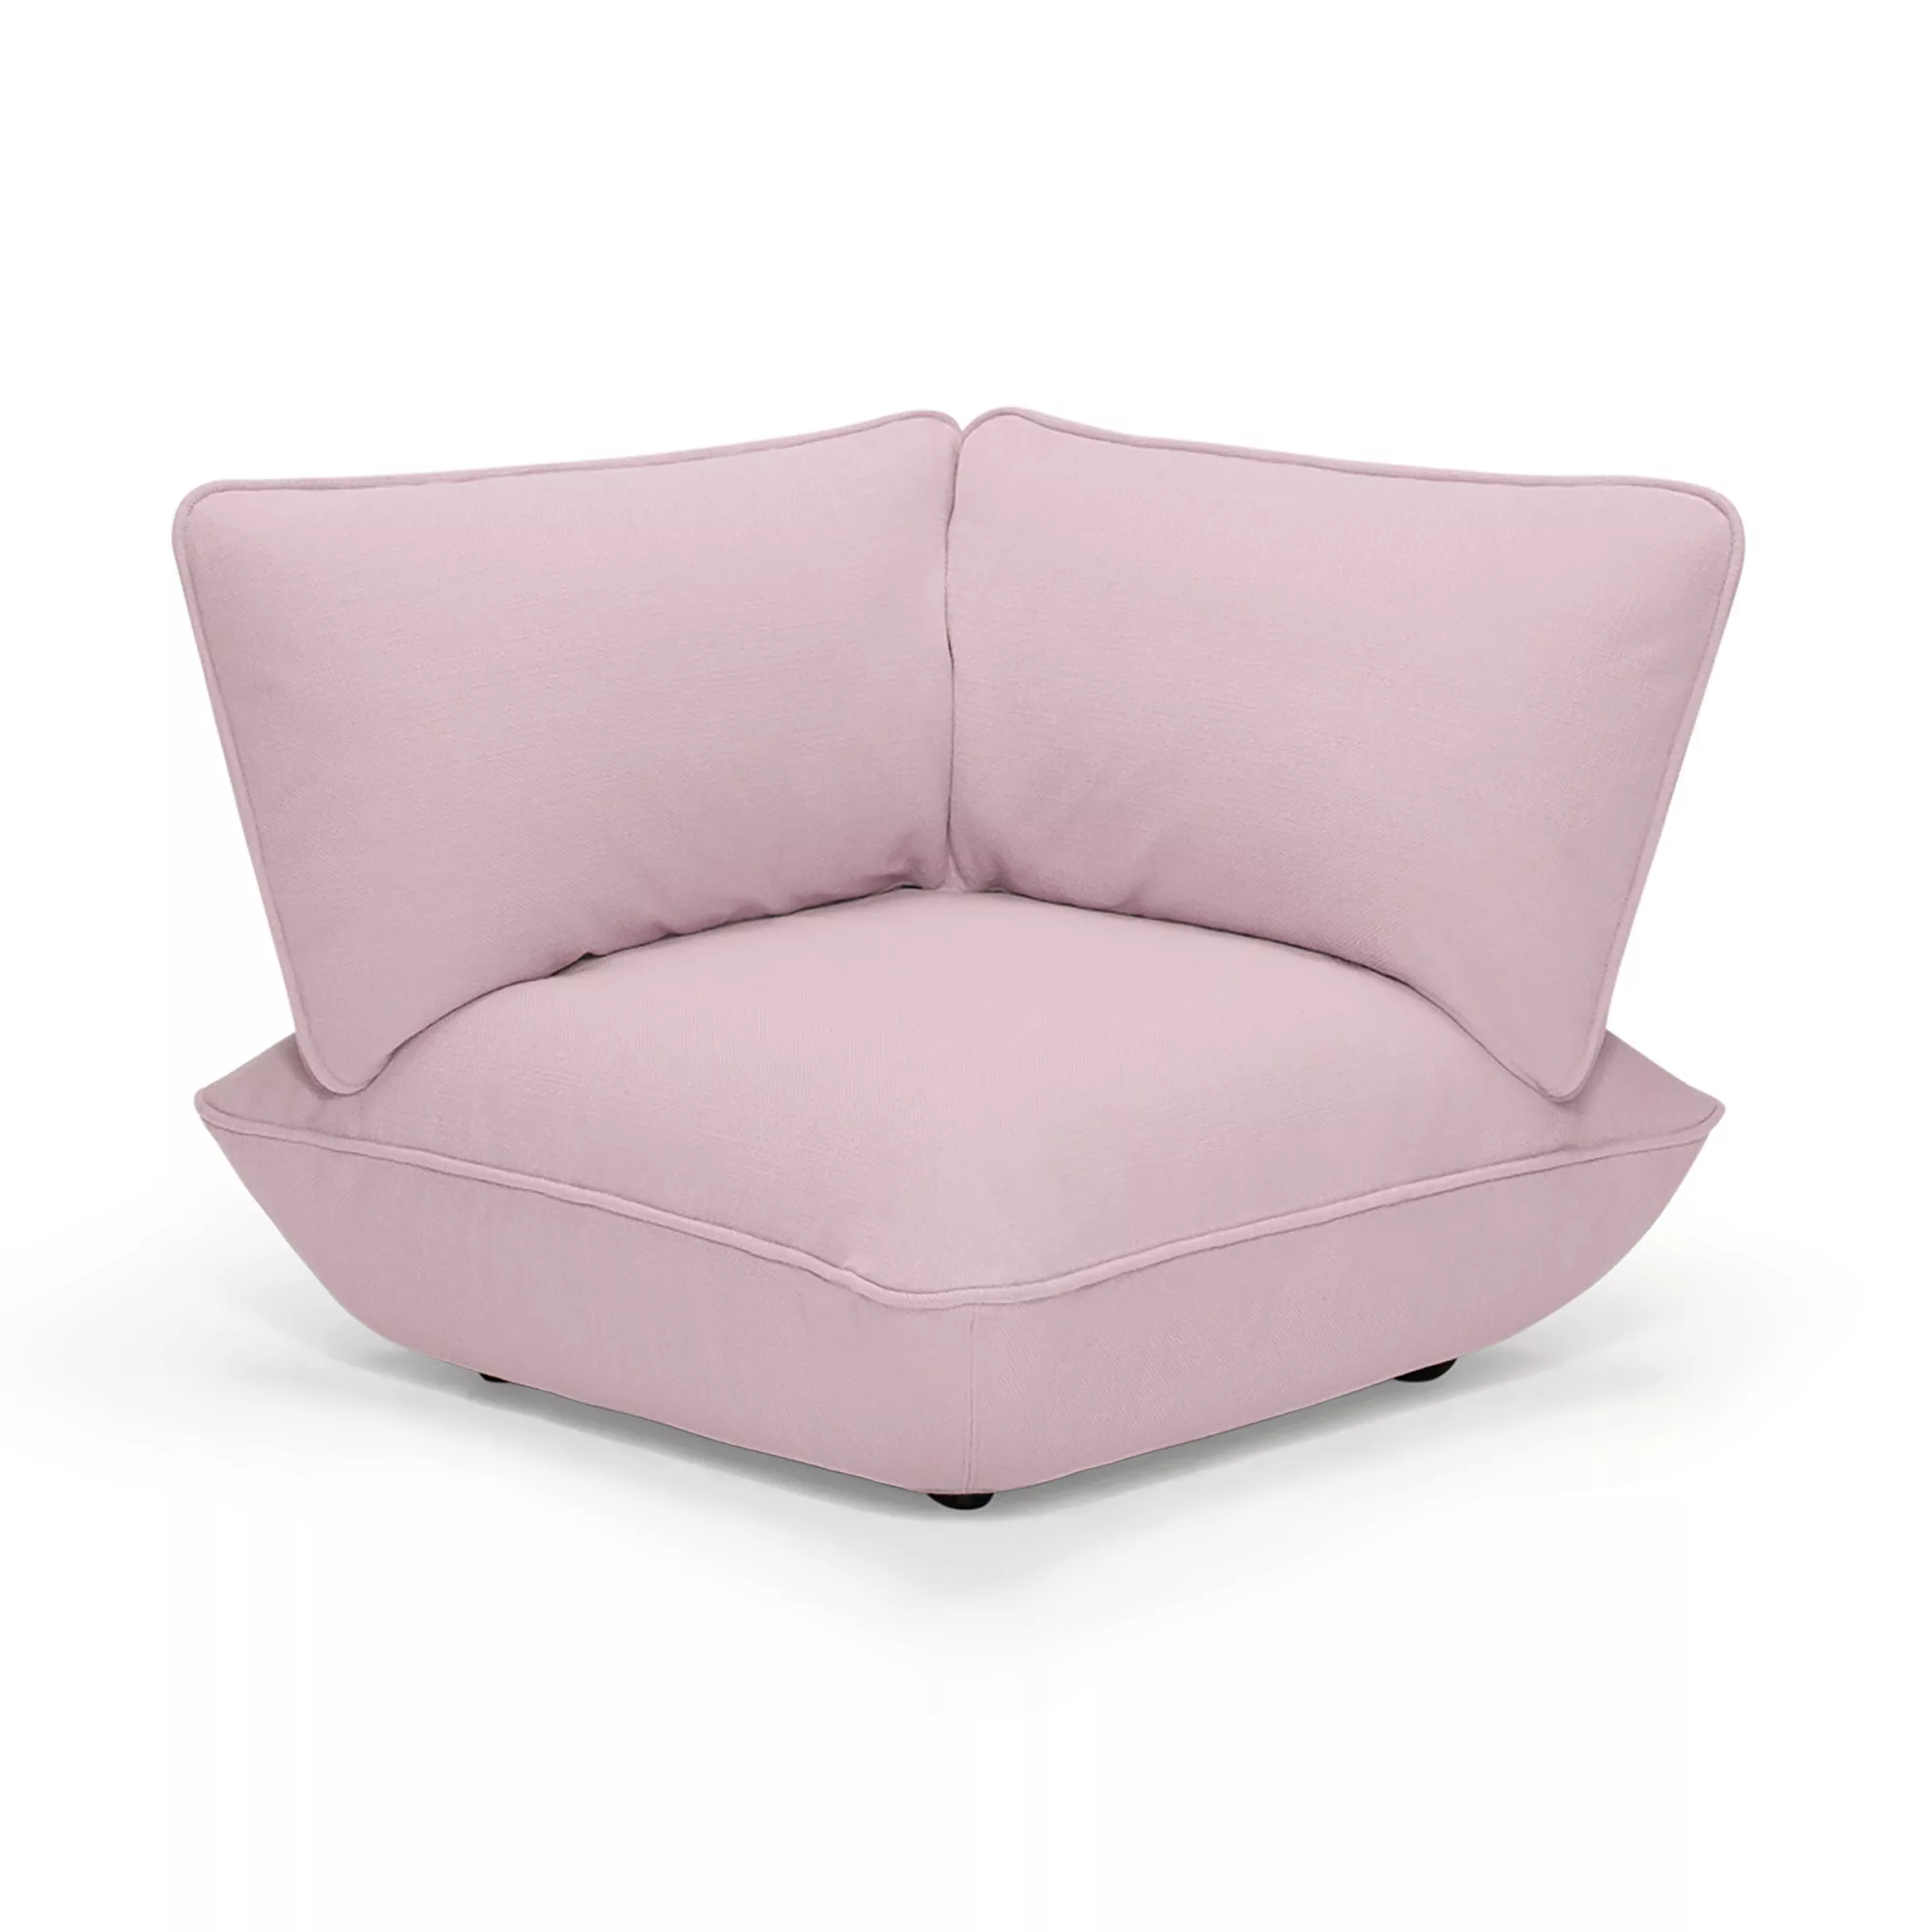 Eckkaminsessel Sumo textil rosa / Modulierbares Sofa - Fatboy - günstig online kaufen